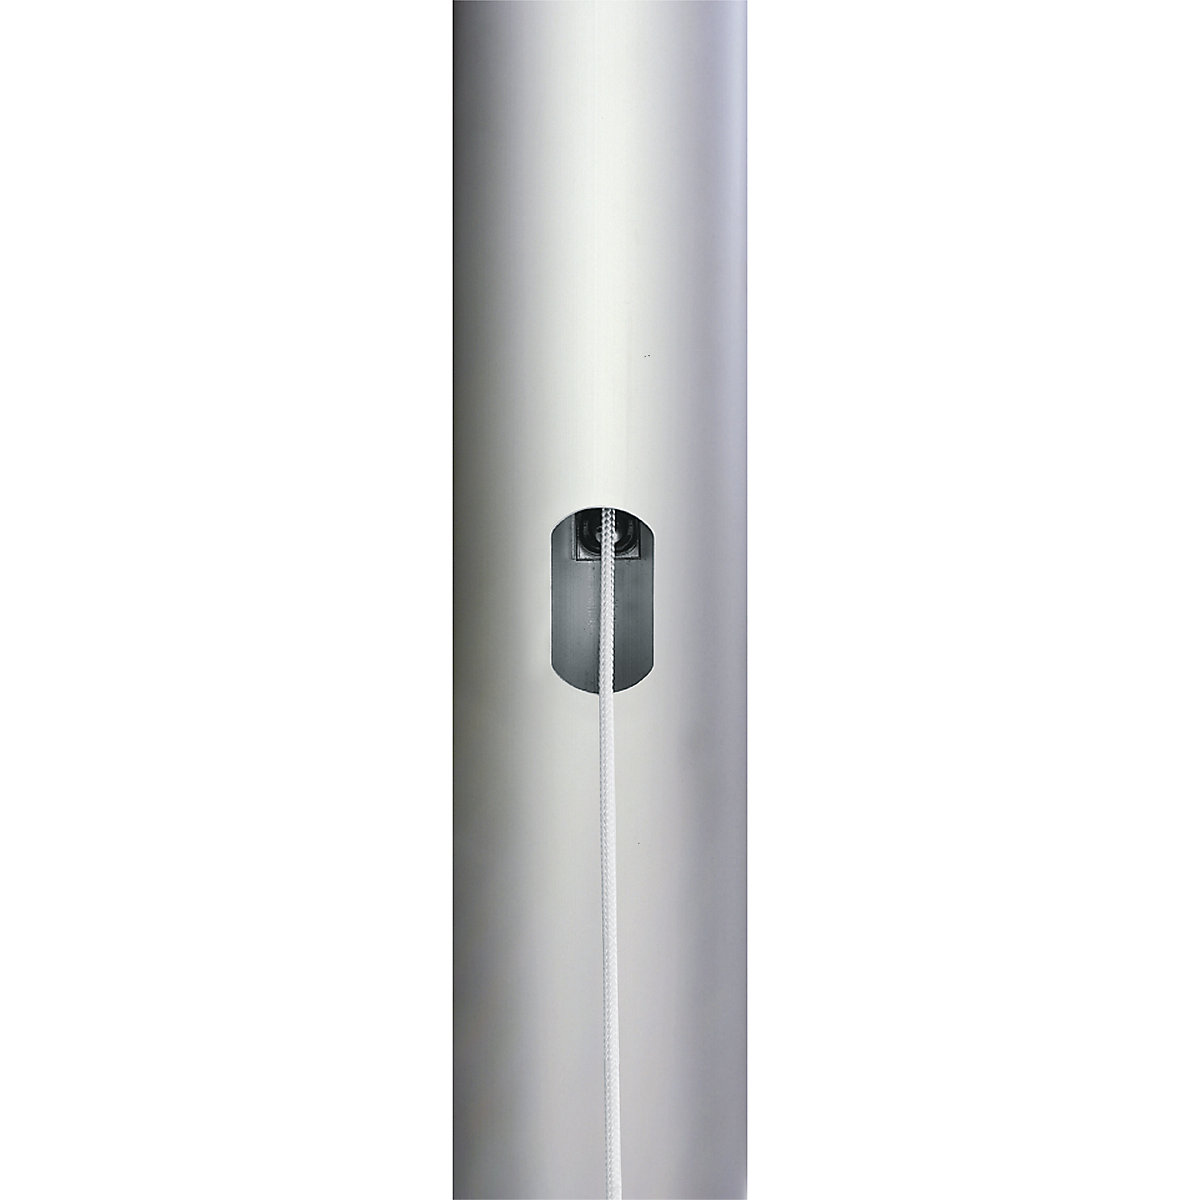 PIRAT aluminium flag pole – Mannus (Product illustration 6)-5